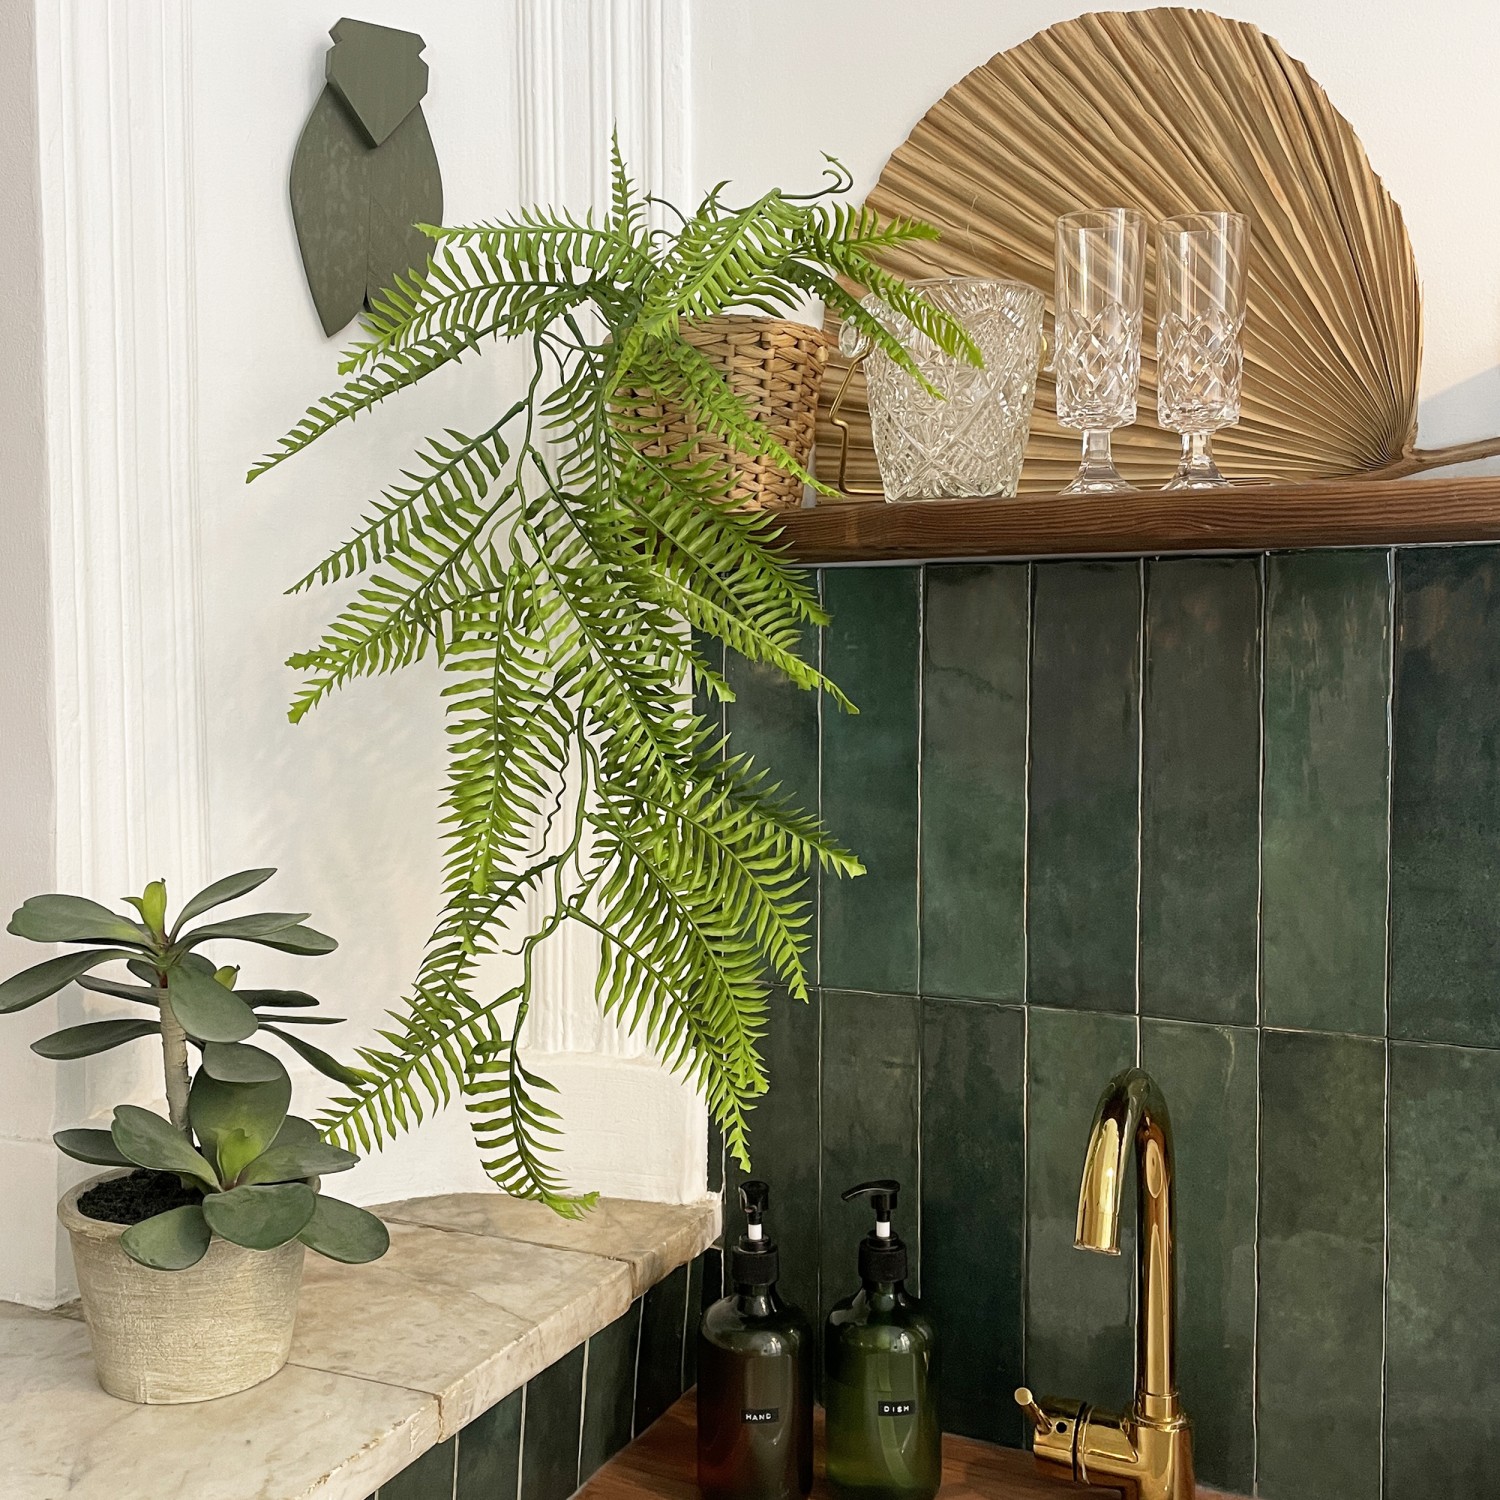 Chute plante artificielle de fougère 100cm lot de 2 en ambiance avec d'autres produits dans une cuisine